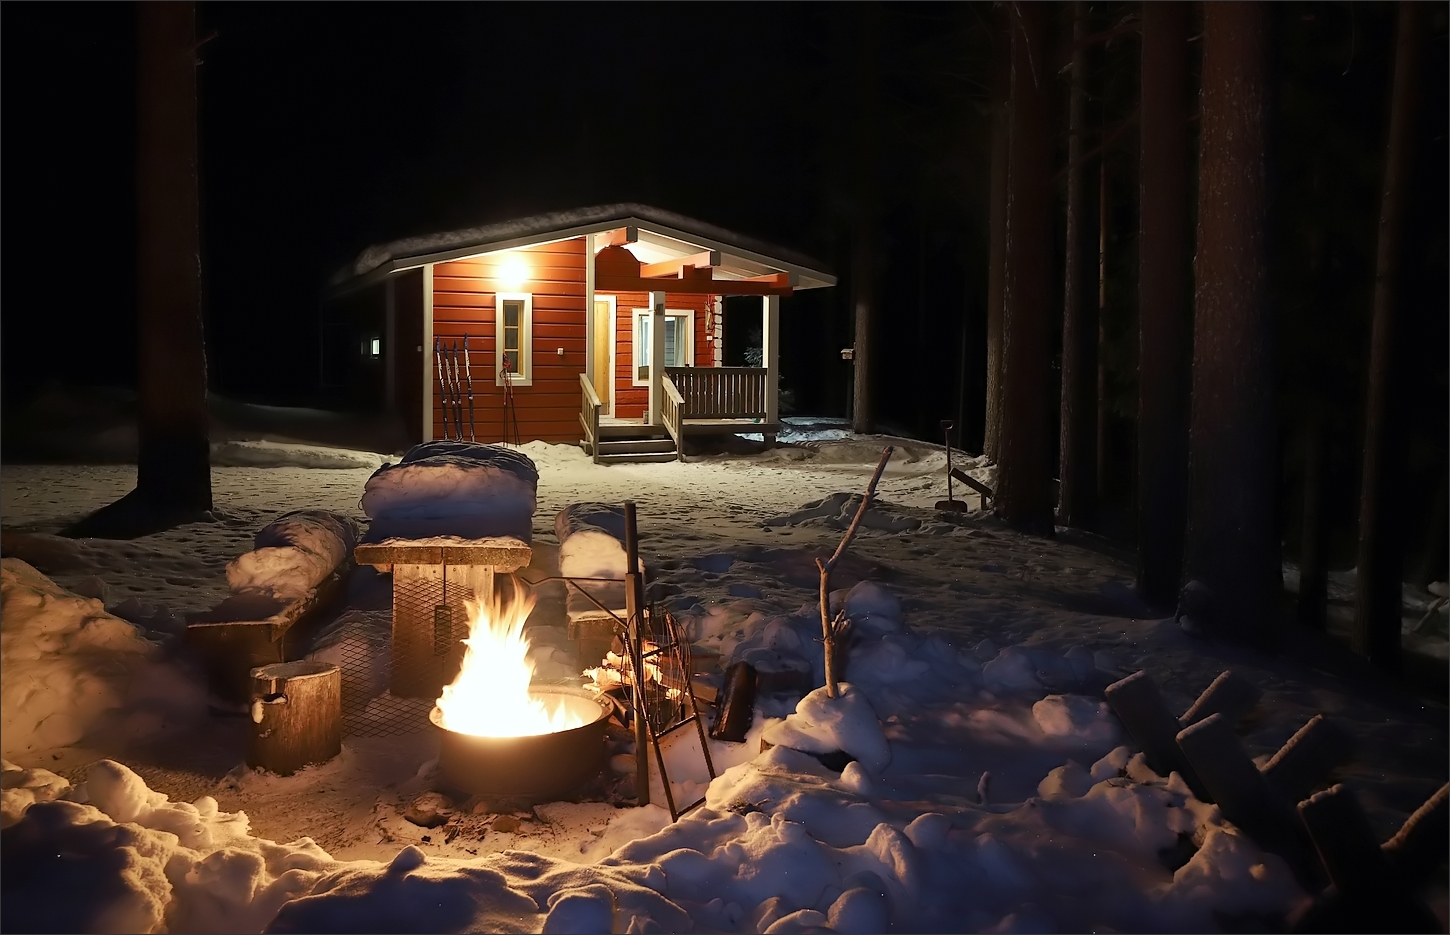 finnische Winterabende